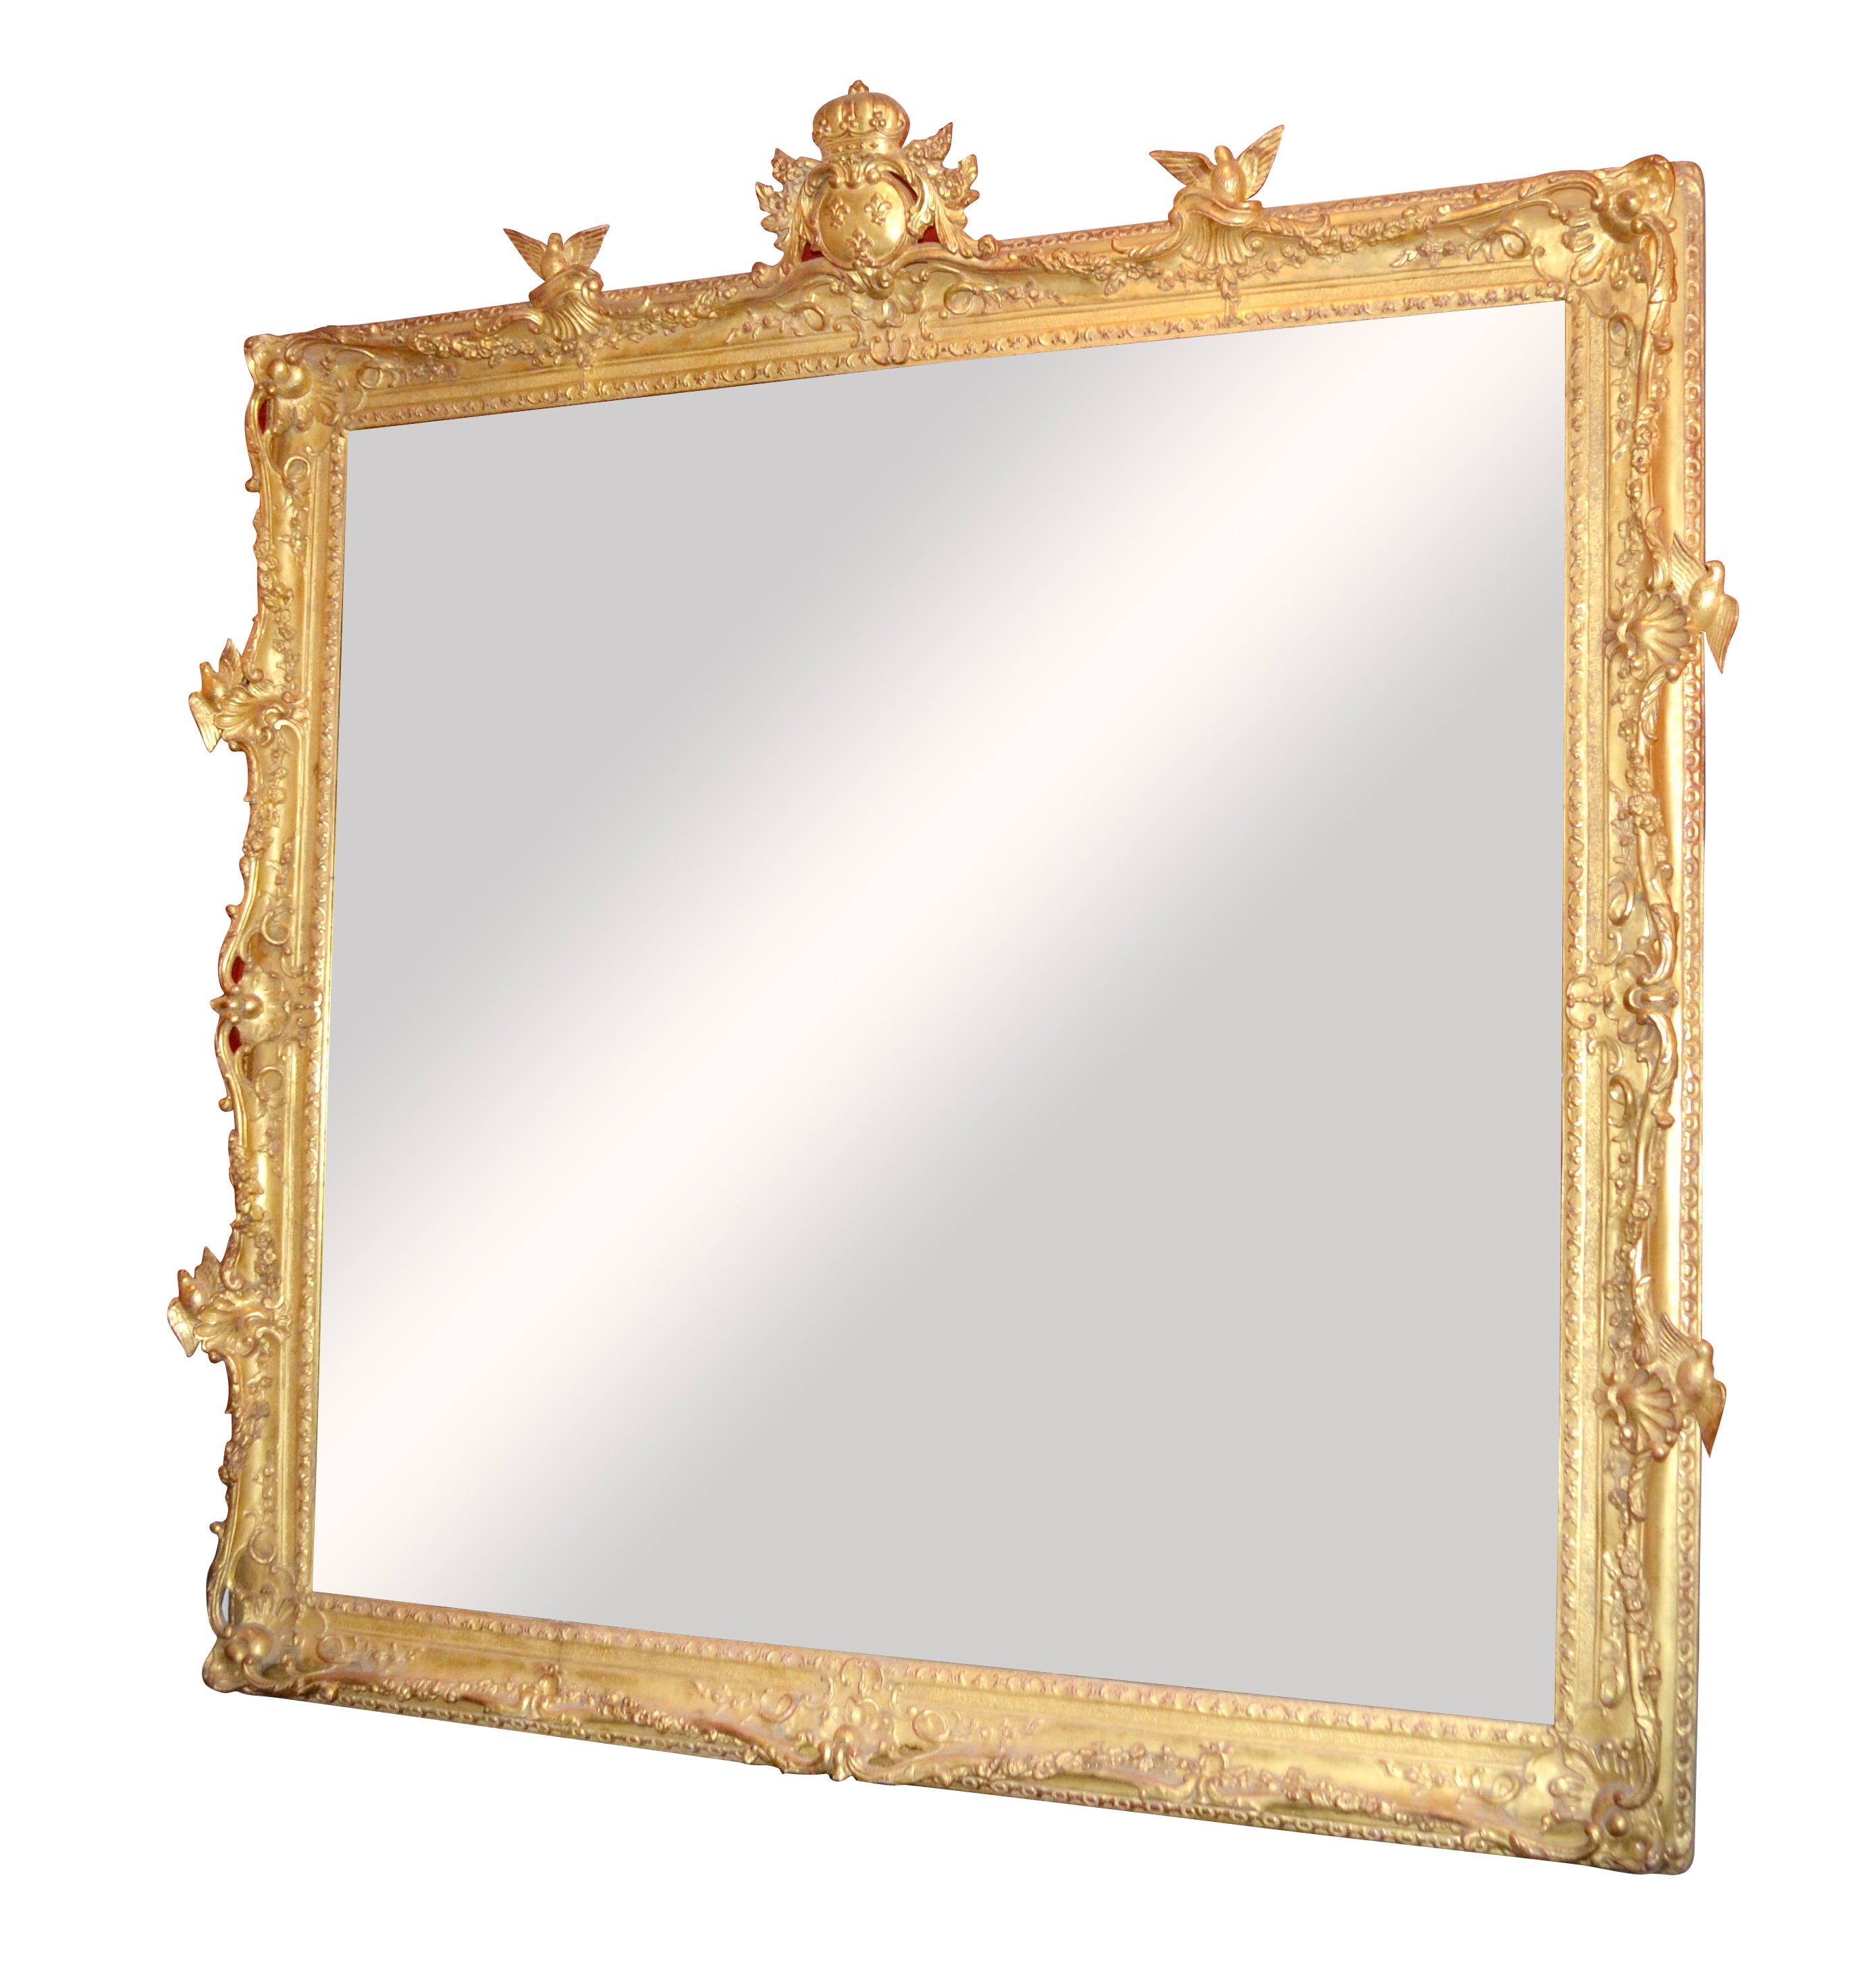 Un grand cadre de miroir magnifiquement sculpté et doré dans le style Louis XV ; une sculpture ouverte sur les côtés et les coins avec deux oiseaux sculptés sur chacun des quatre côtés, le haut décoré d'un cartouche central montrant trois fleurs de